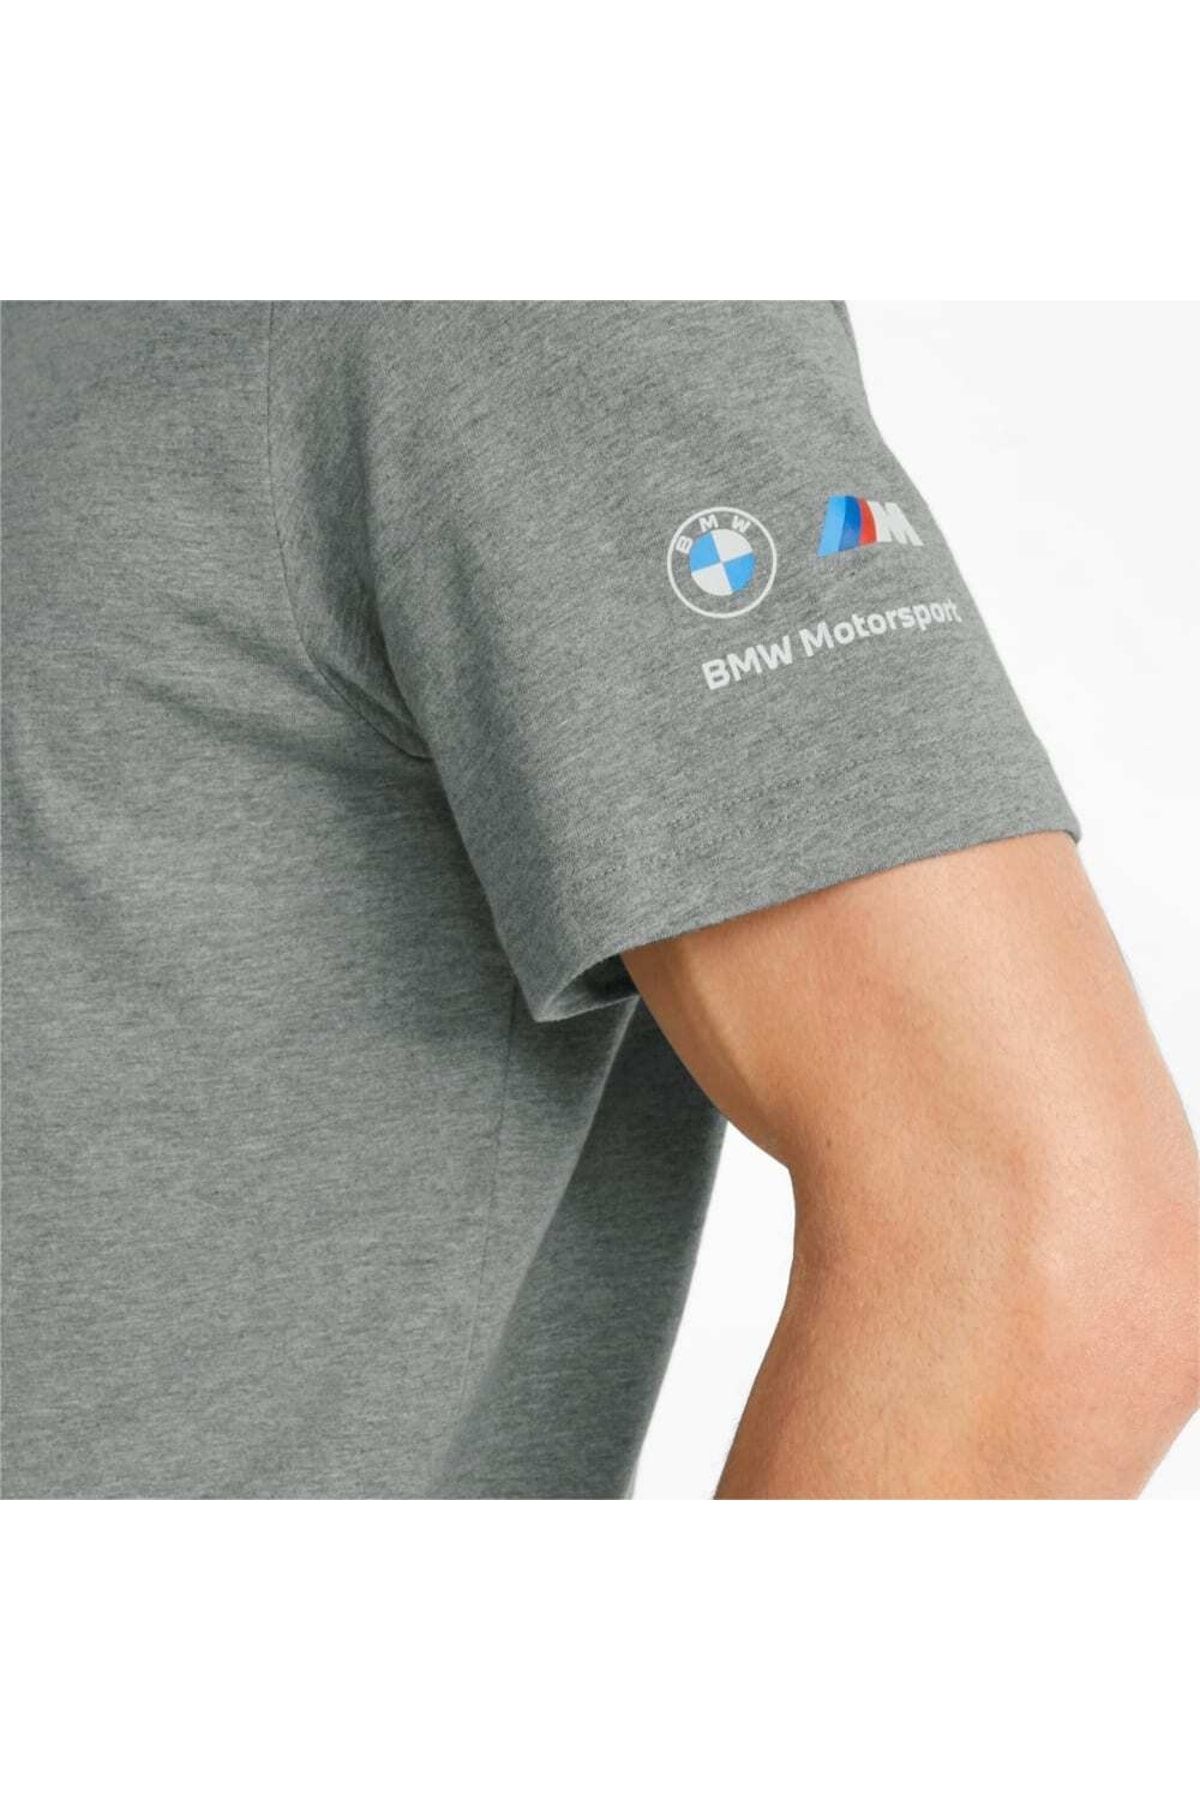 T-shirt homme PUMA BMW Motorsport